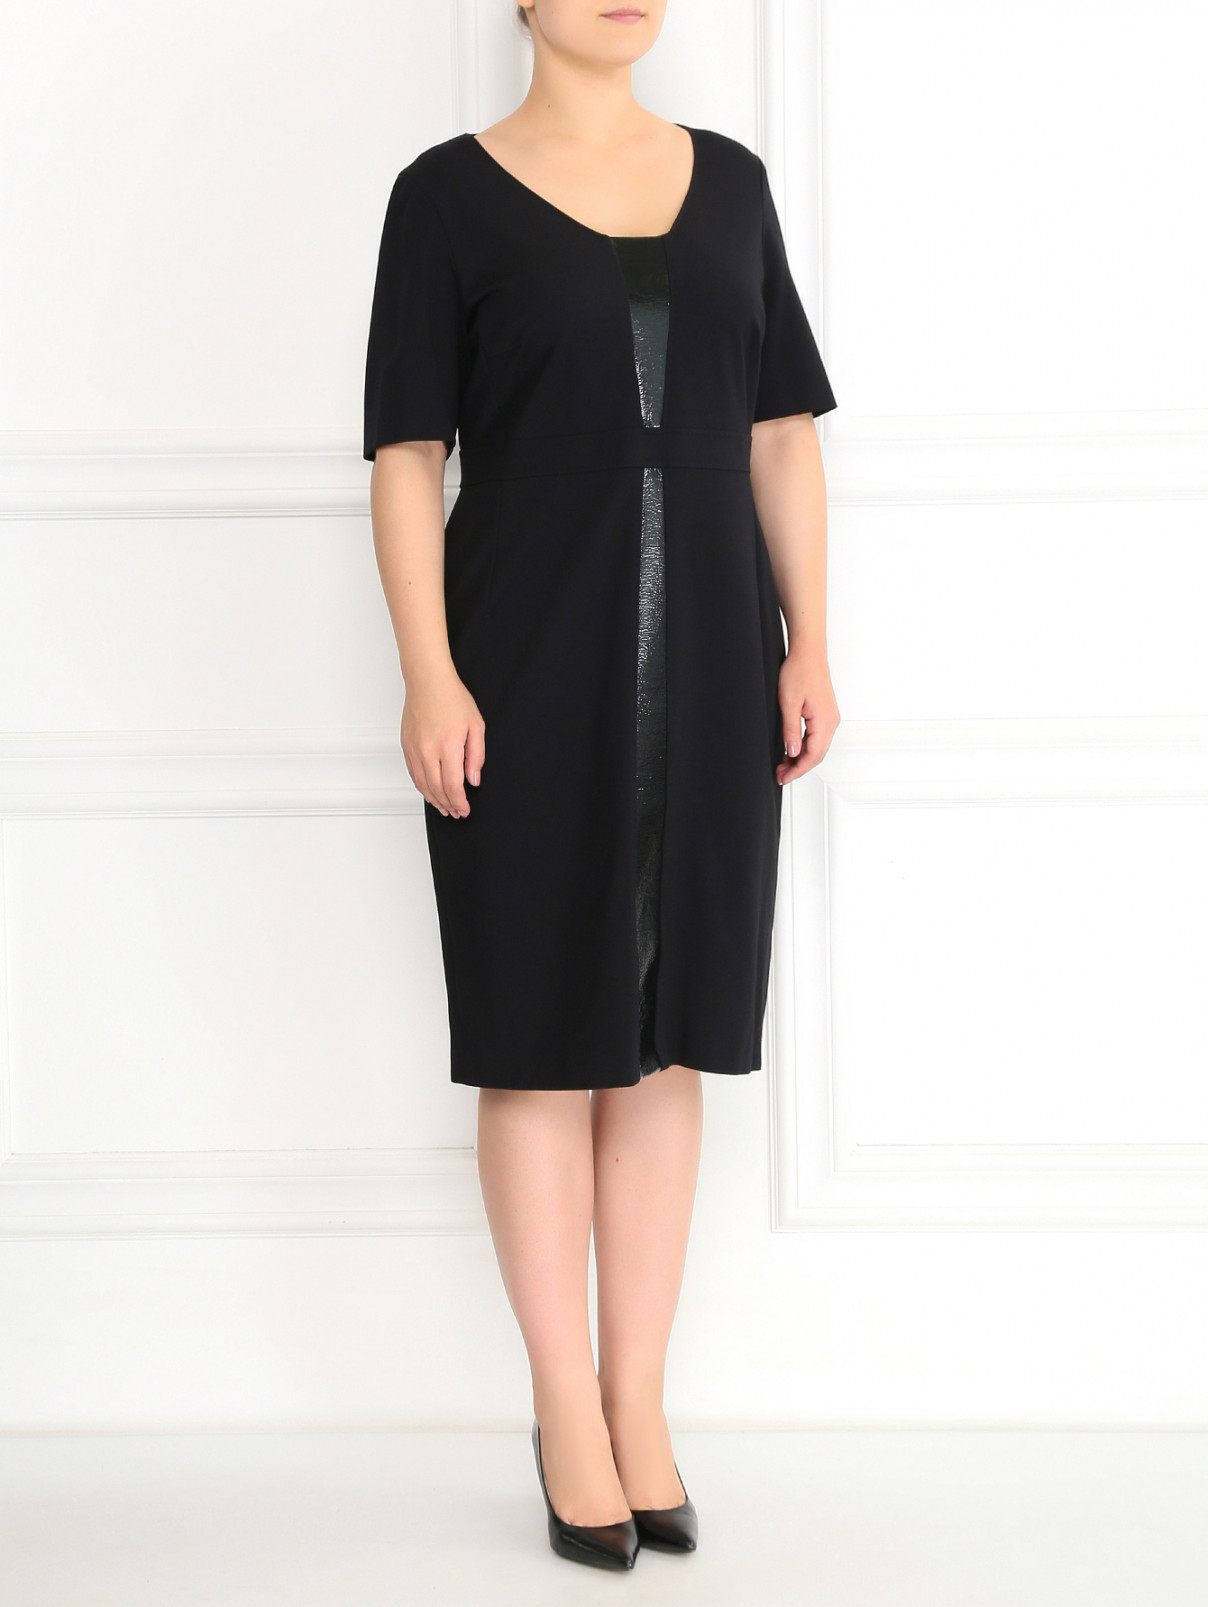 Платье-футляр с короткими рукавами Marina Rinaldi  –  Модель Общий вид  – Цвет:  Черный